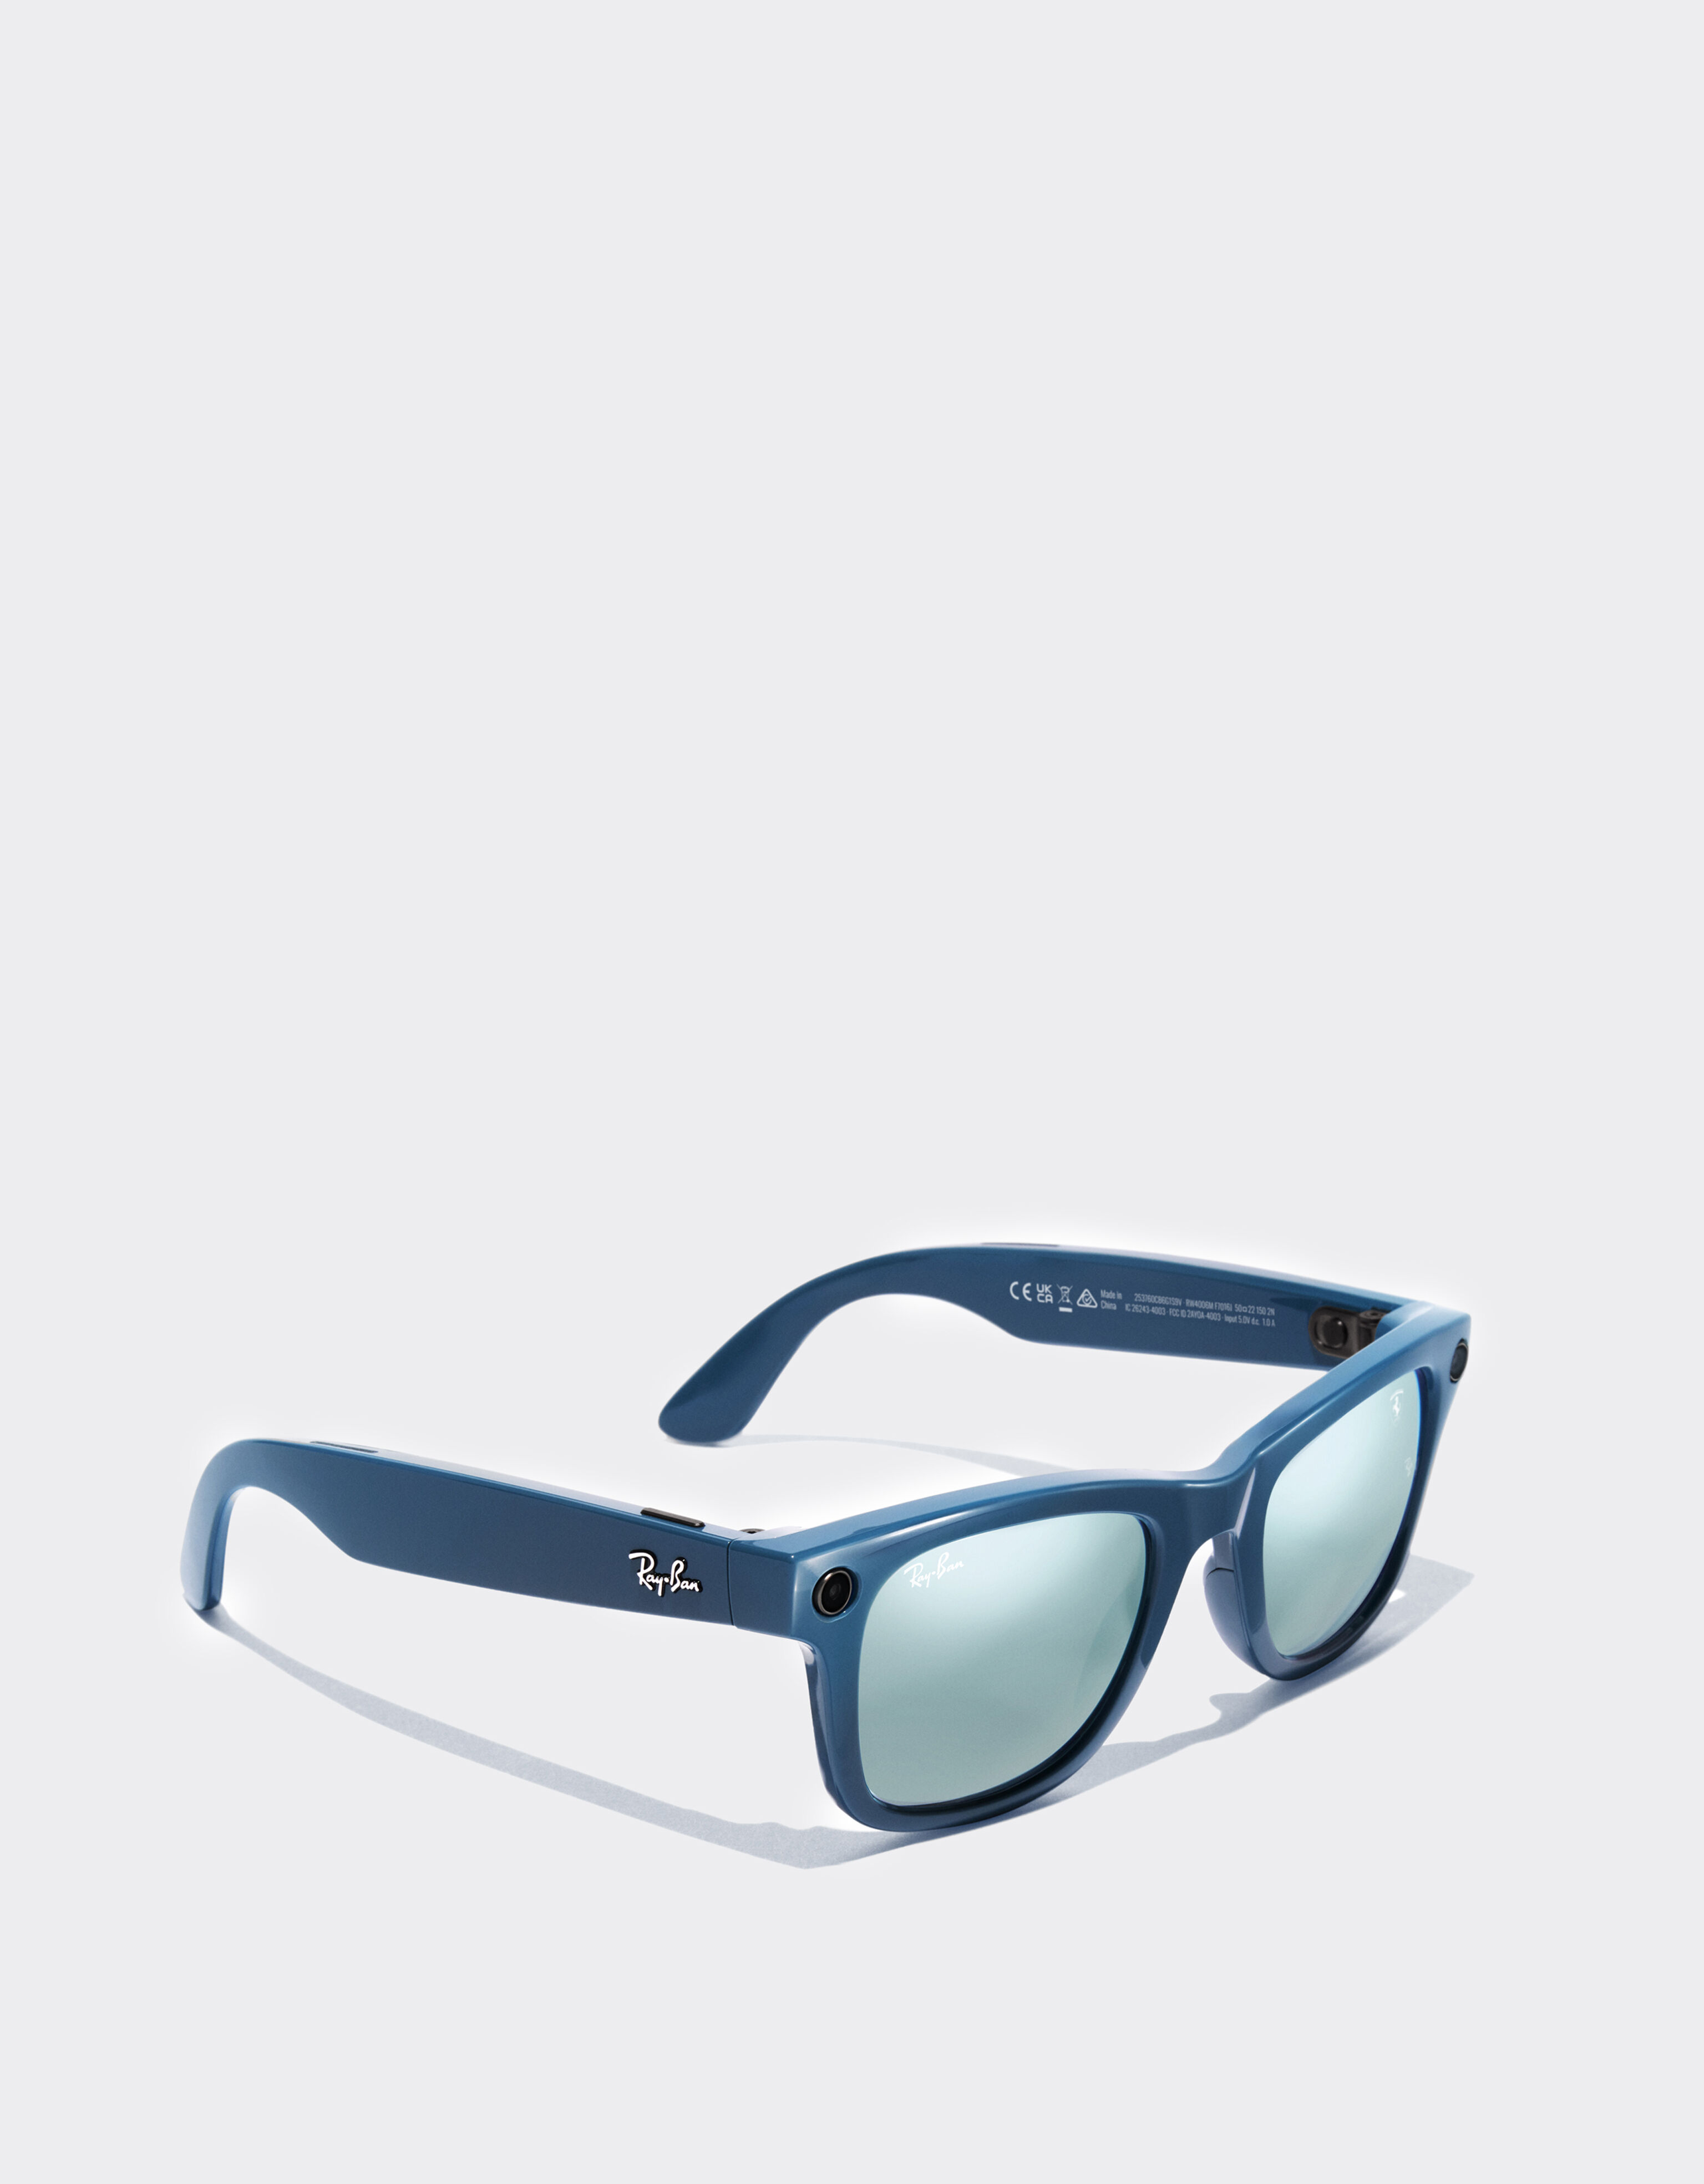 Ferrari Meta smart Ray-Ban for Scuderia Ferrari Wayfarer sunglasses – Miami Special Edition #010205 F1365f